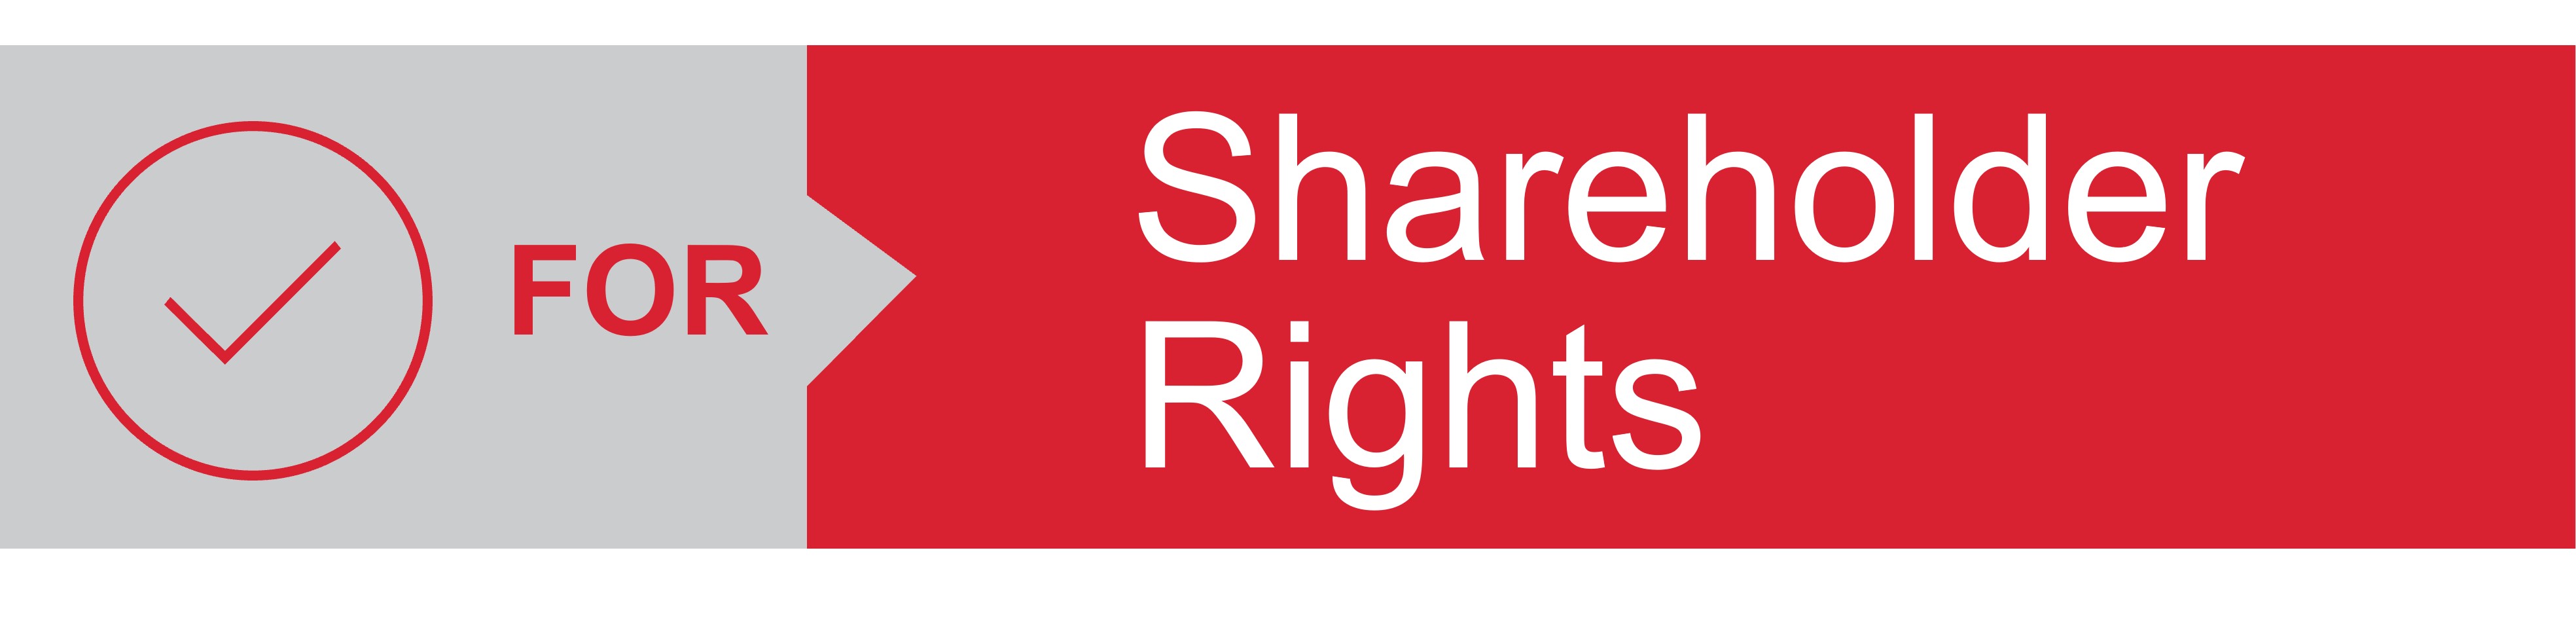 Shareholders Rights- Banner.jpg